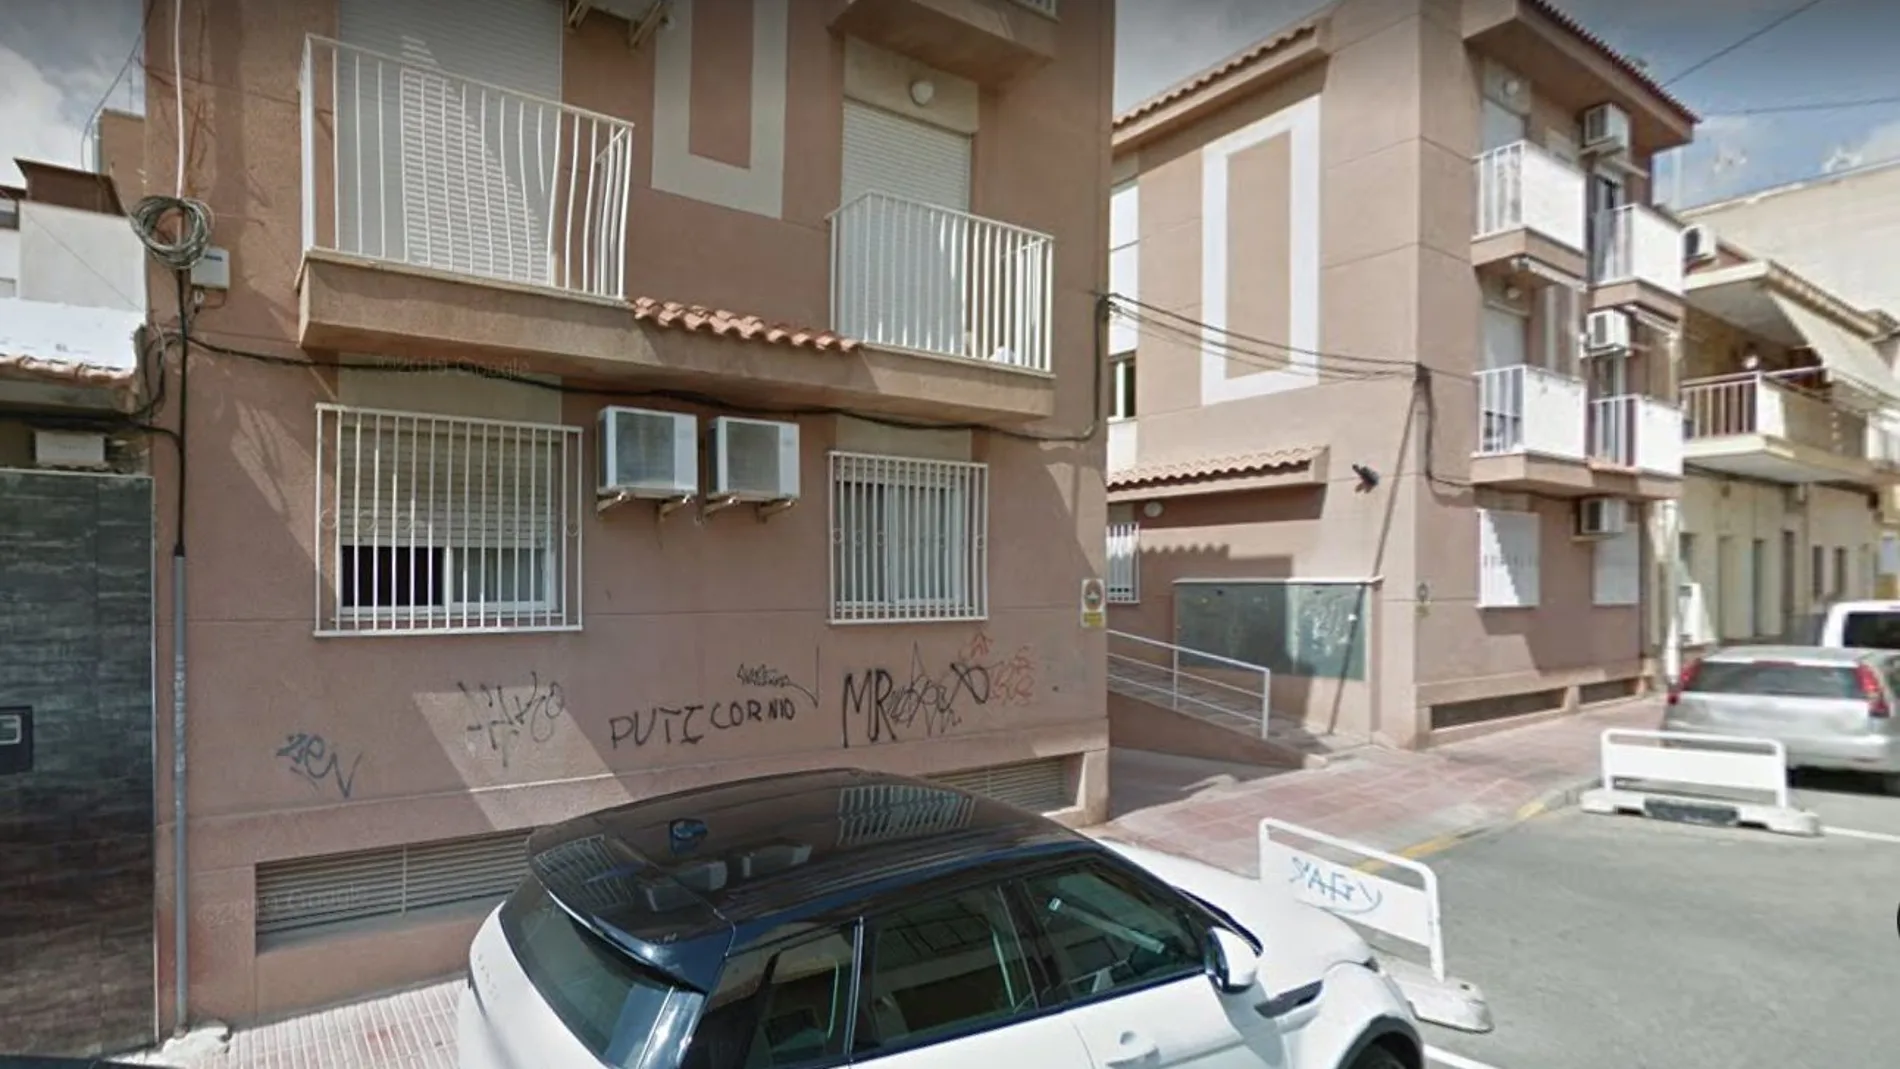 El presunto parricida salió de San Vicent del Raspeig en su coche y fue detenido en Alicante